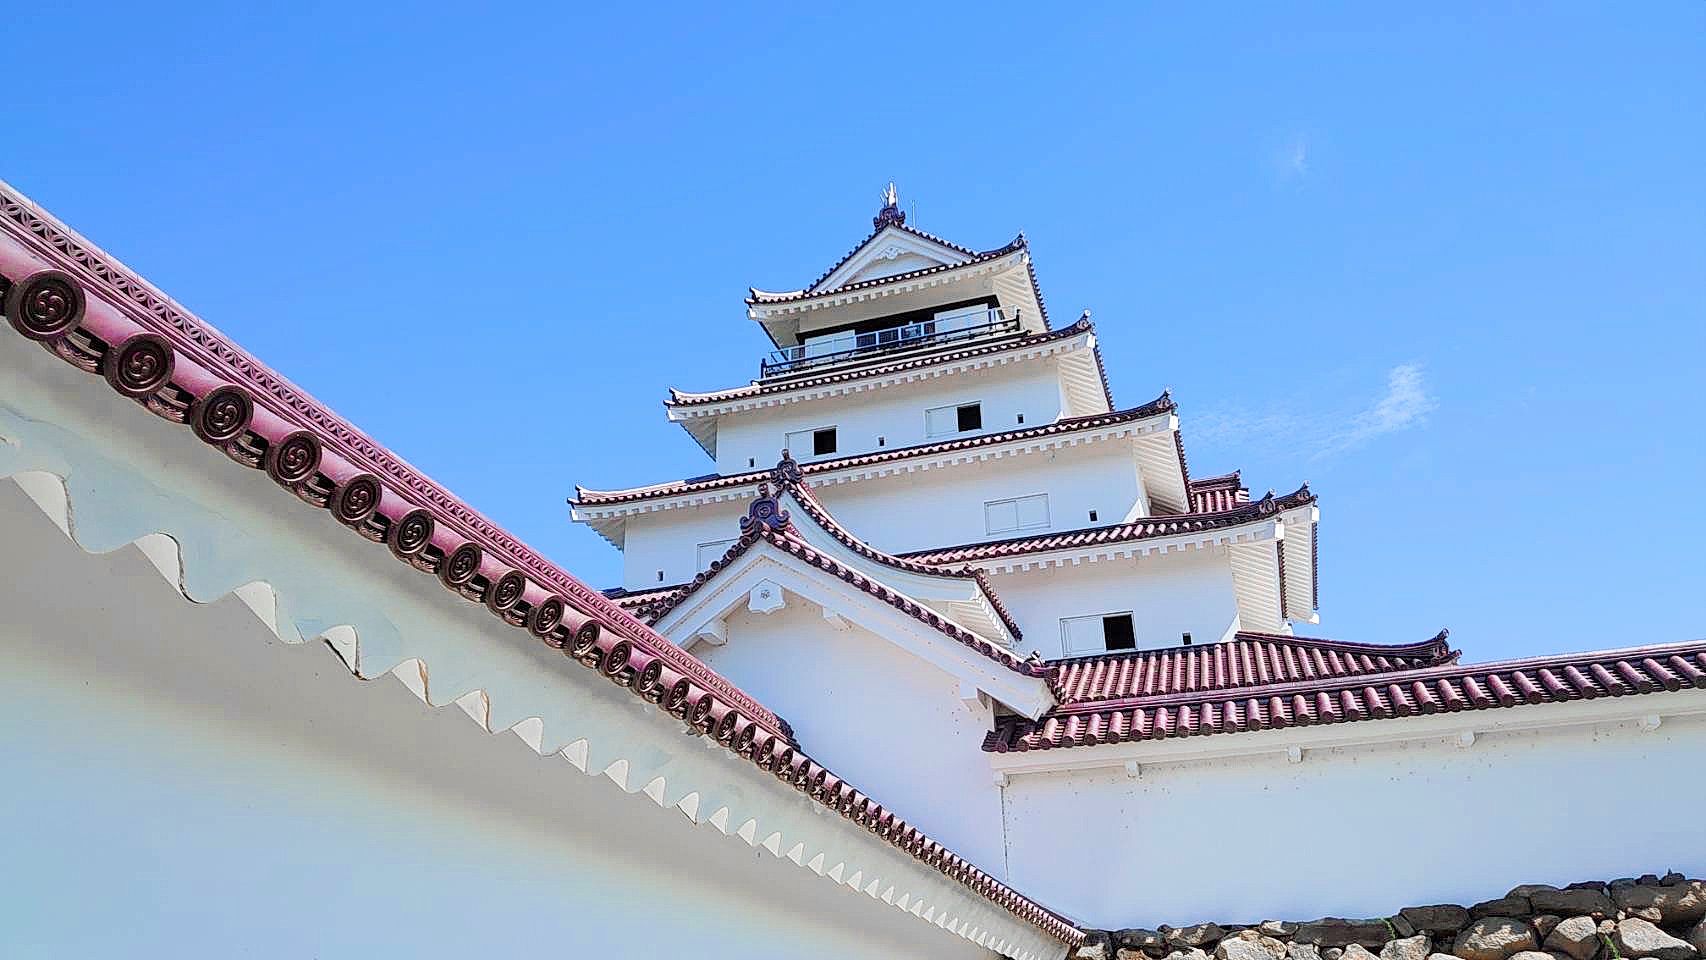 福島の雪と寒さが生んだ会津若松城｢赤瓦｣の"美" 白い壁に映える赤い瓦､紅白の配色にうっとり